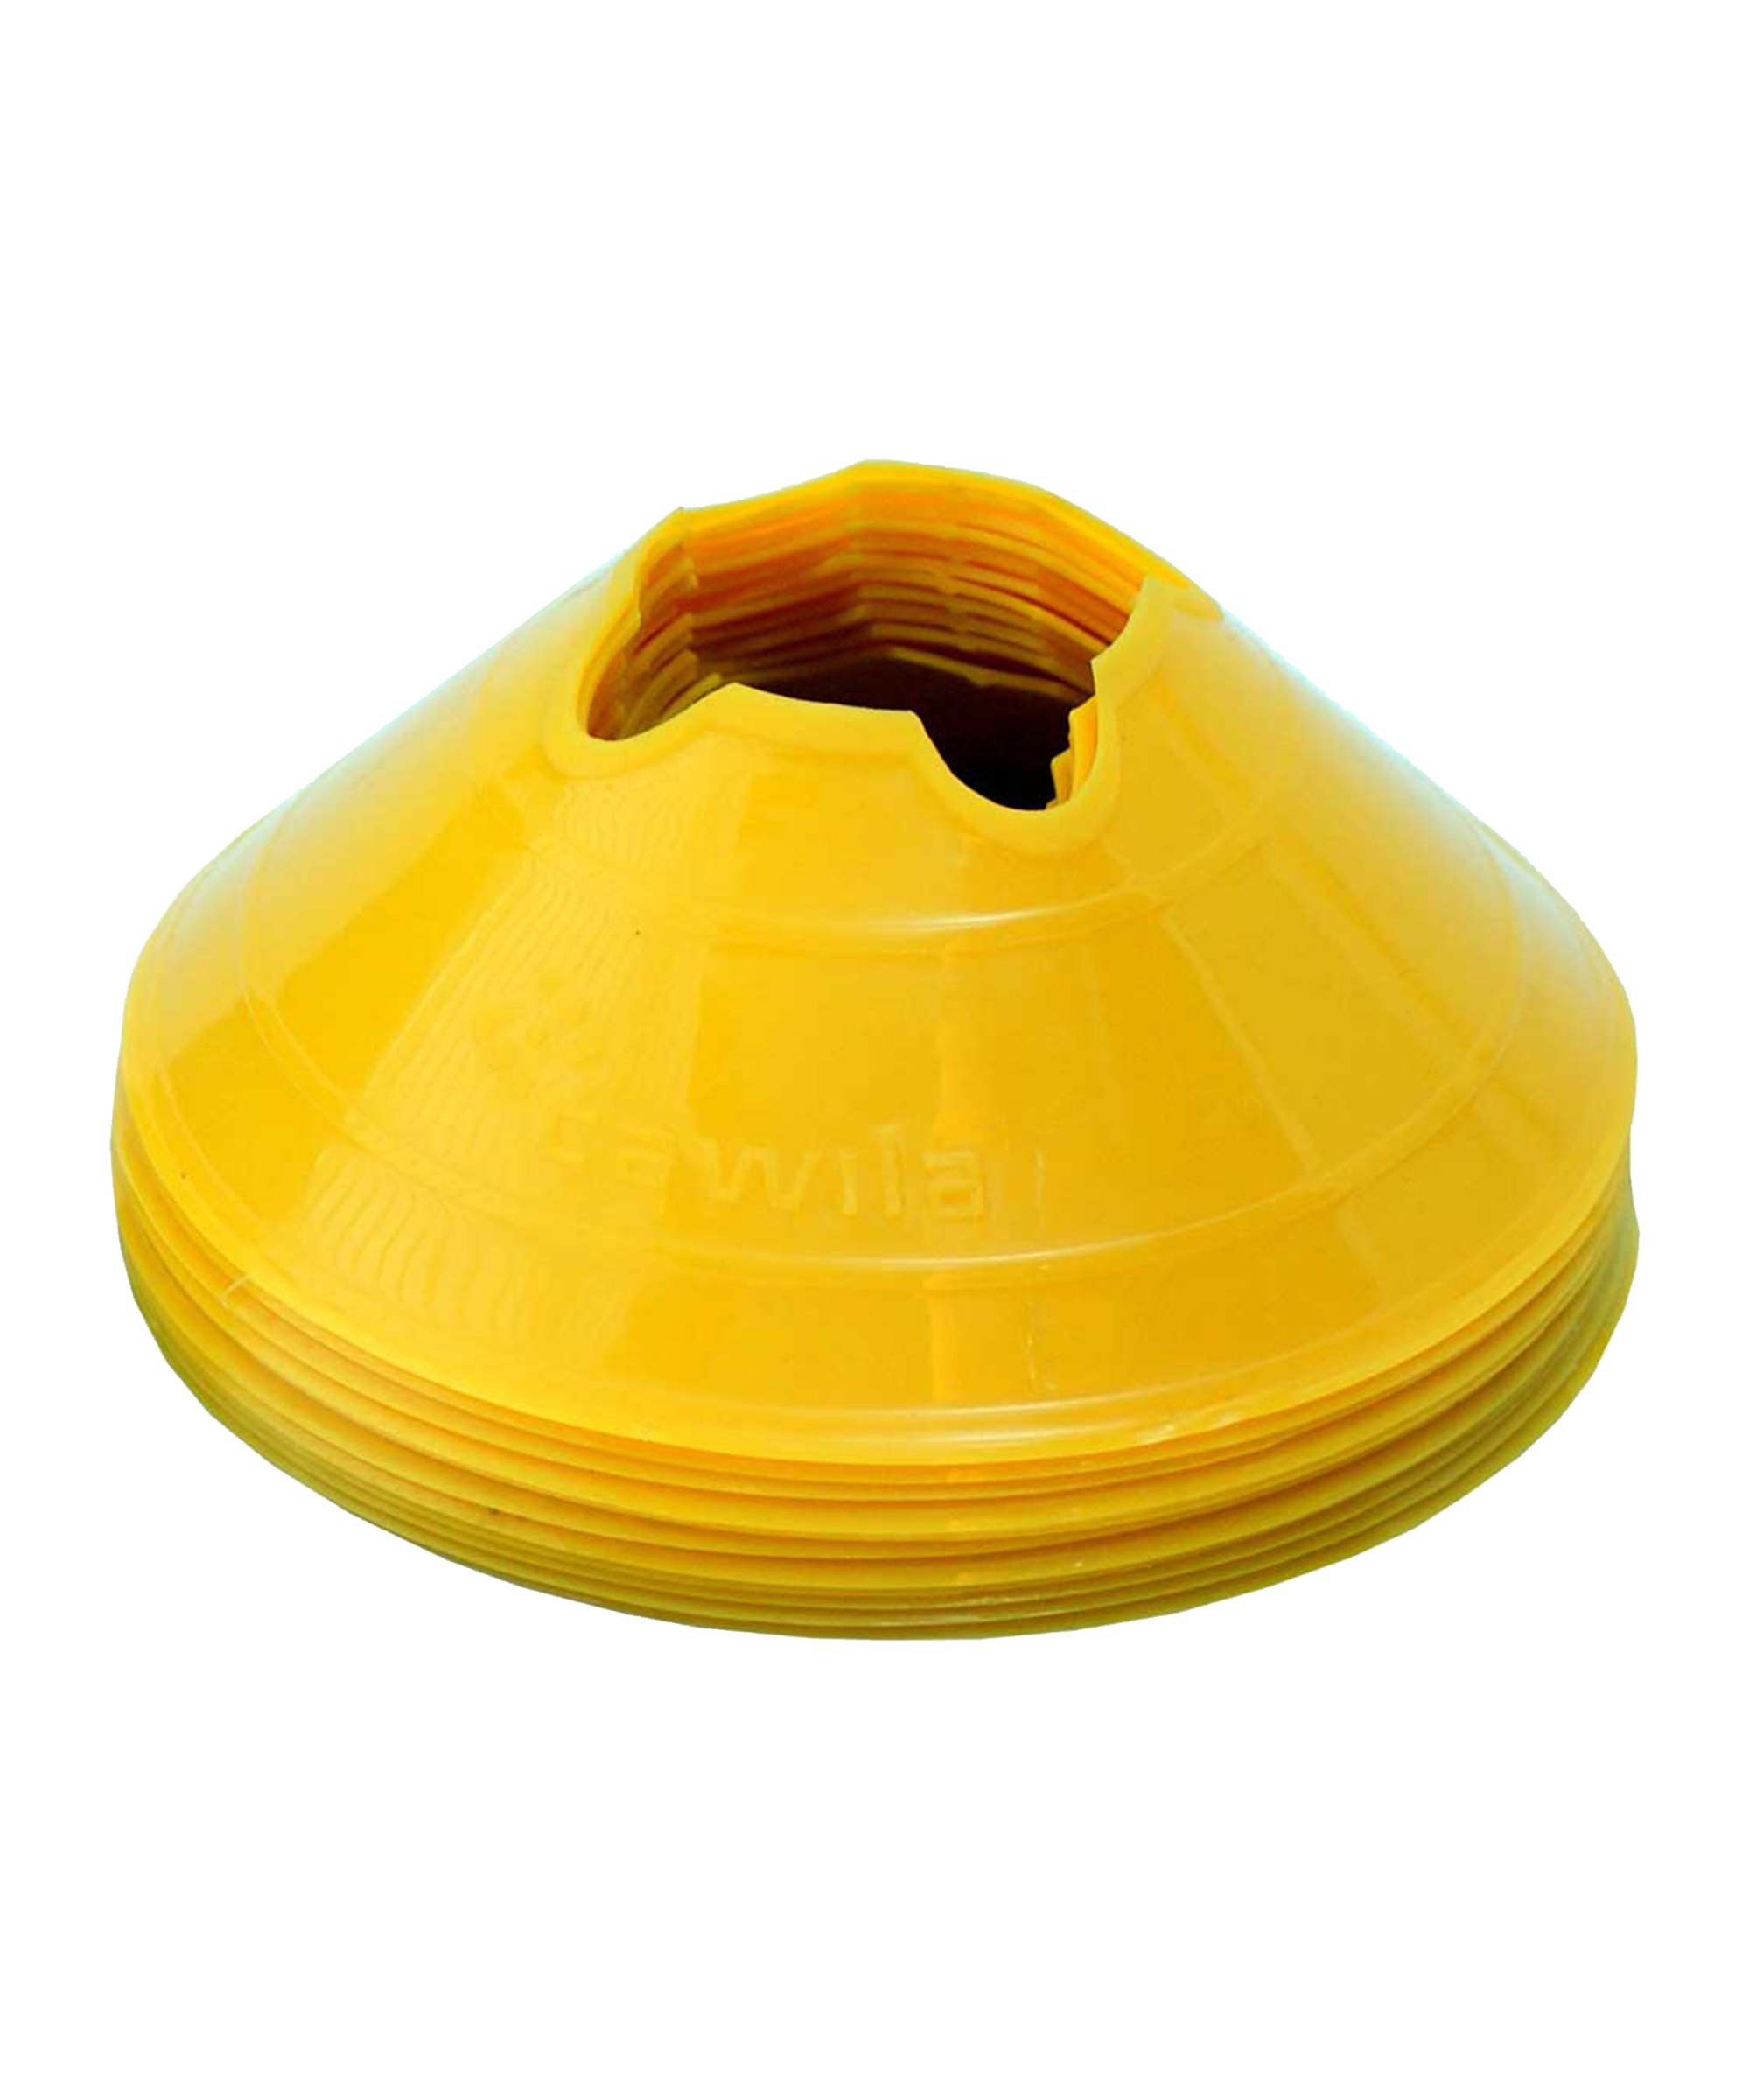 Cawila Markierungshauben M | 10er Set | Durchmesser 20cm, Höhe 6cm | gelb - gelb